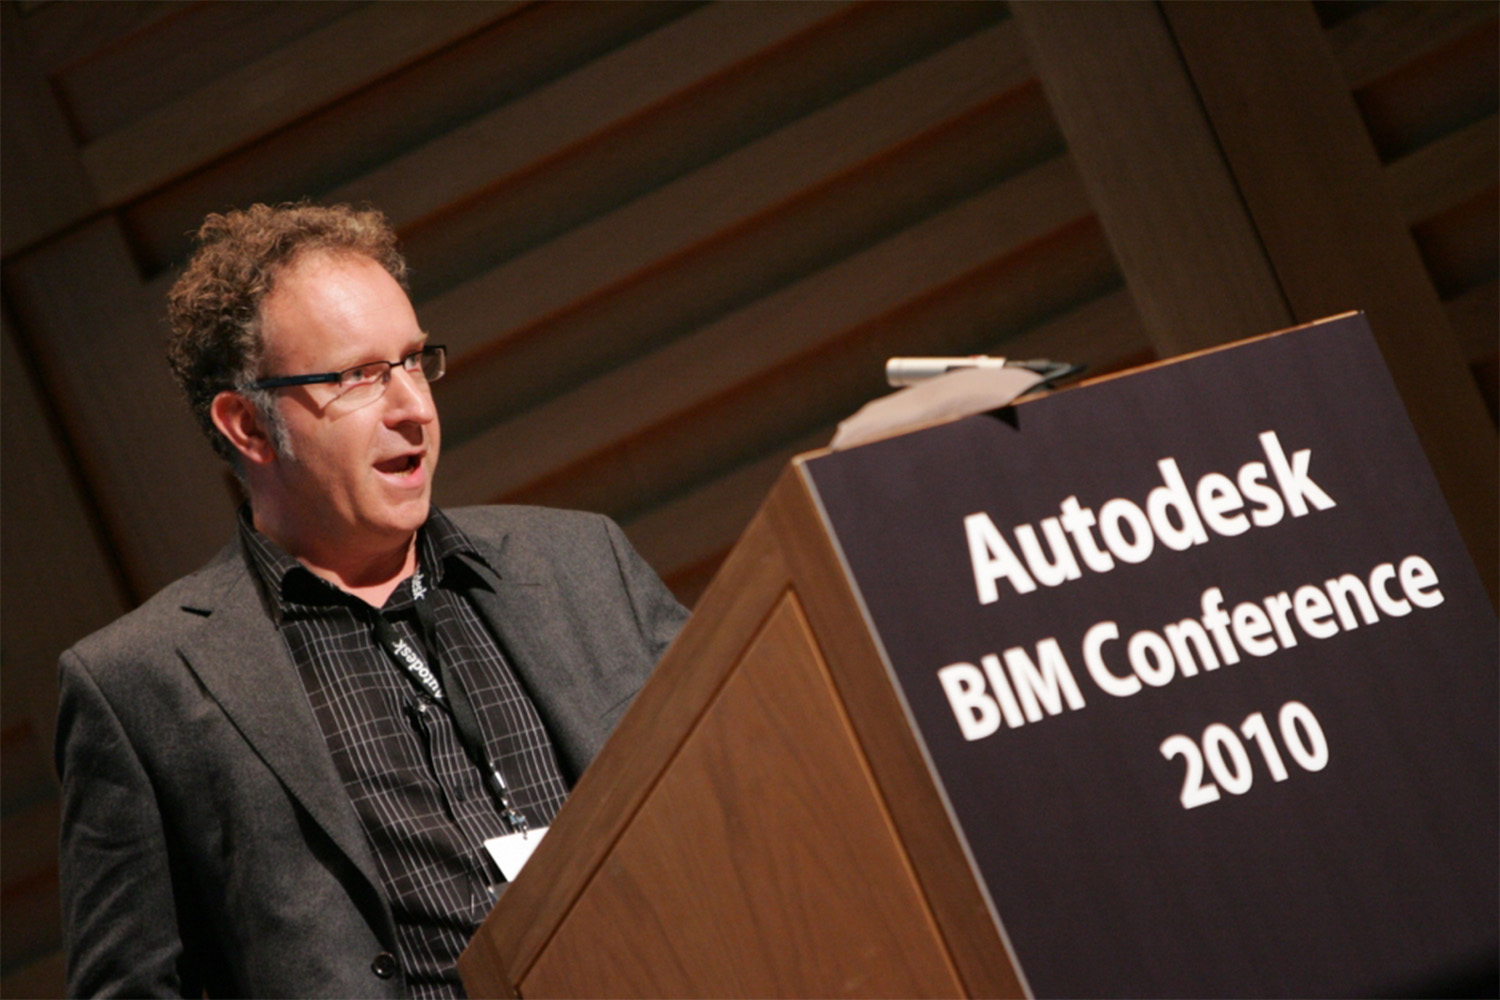 man speaking behind podium at 2010 BIM conference in London 